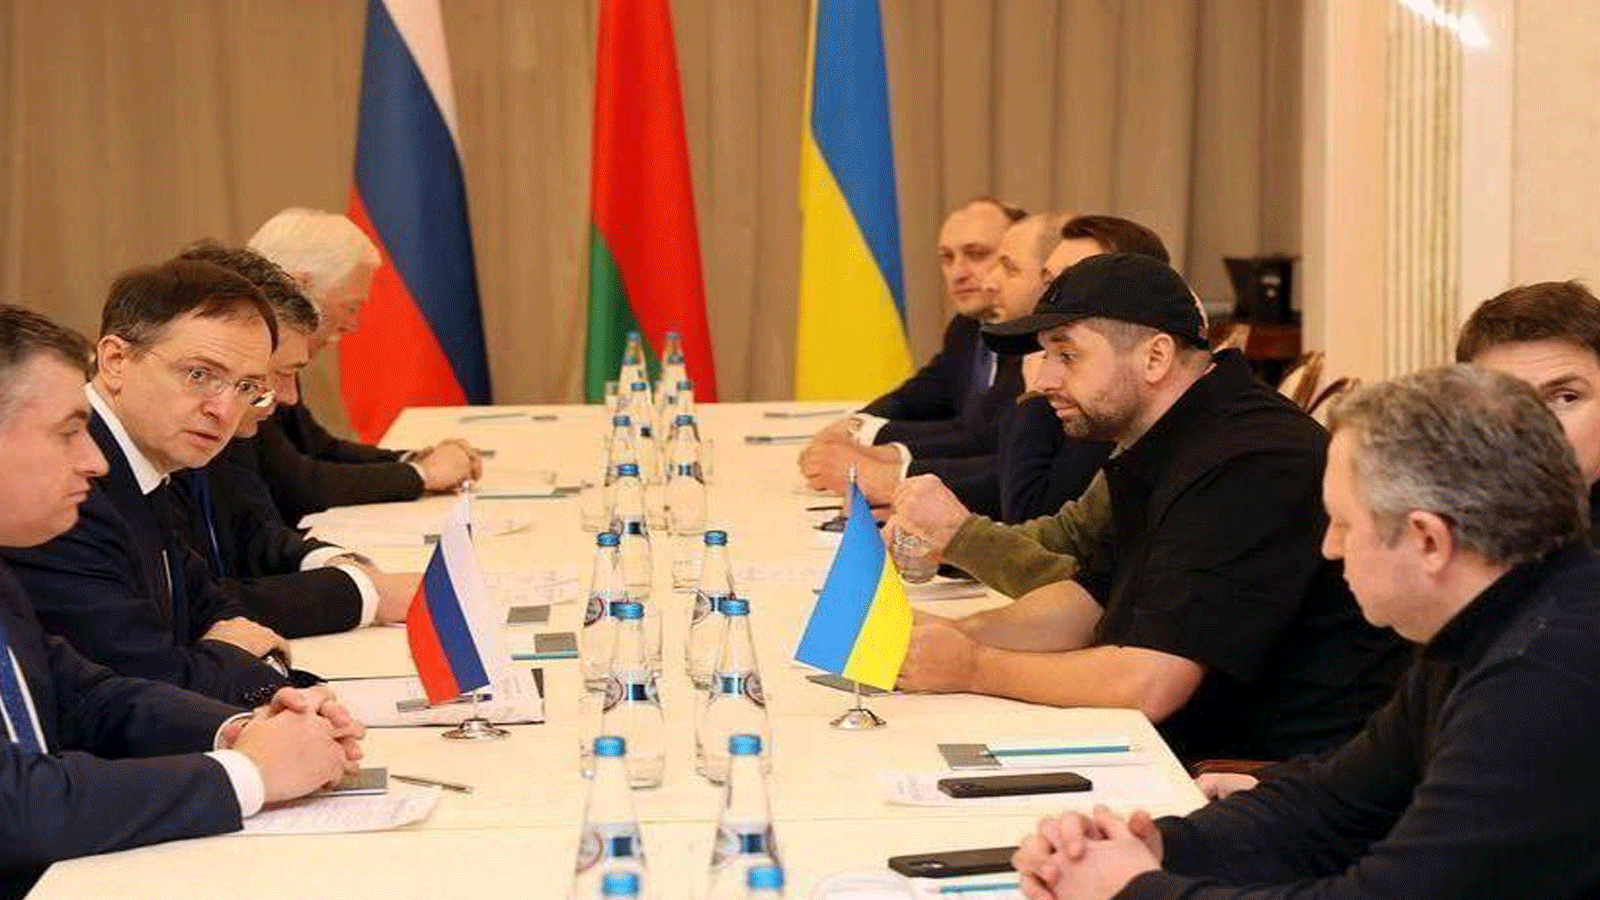 لقطة من جولة المفاوضات السابقة بين كييف وموسكو